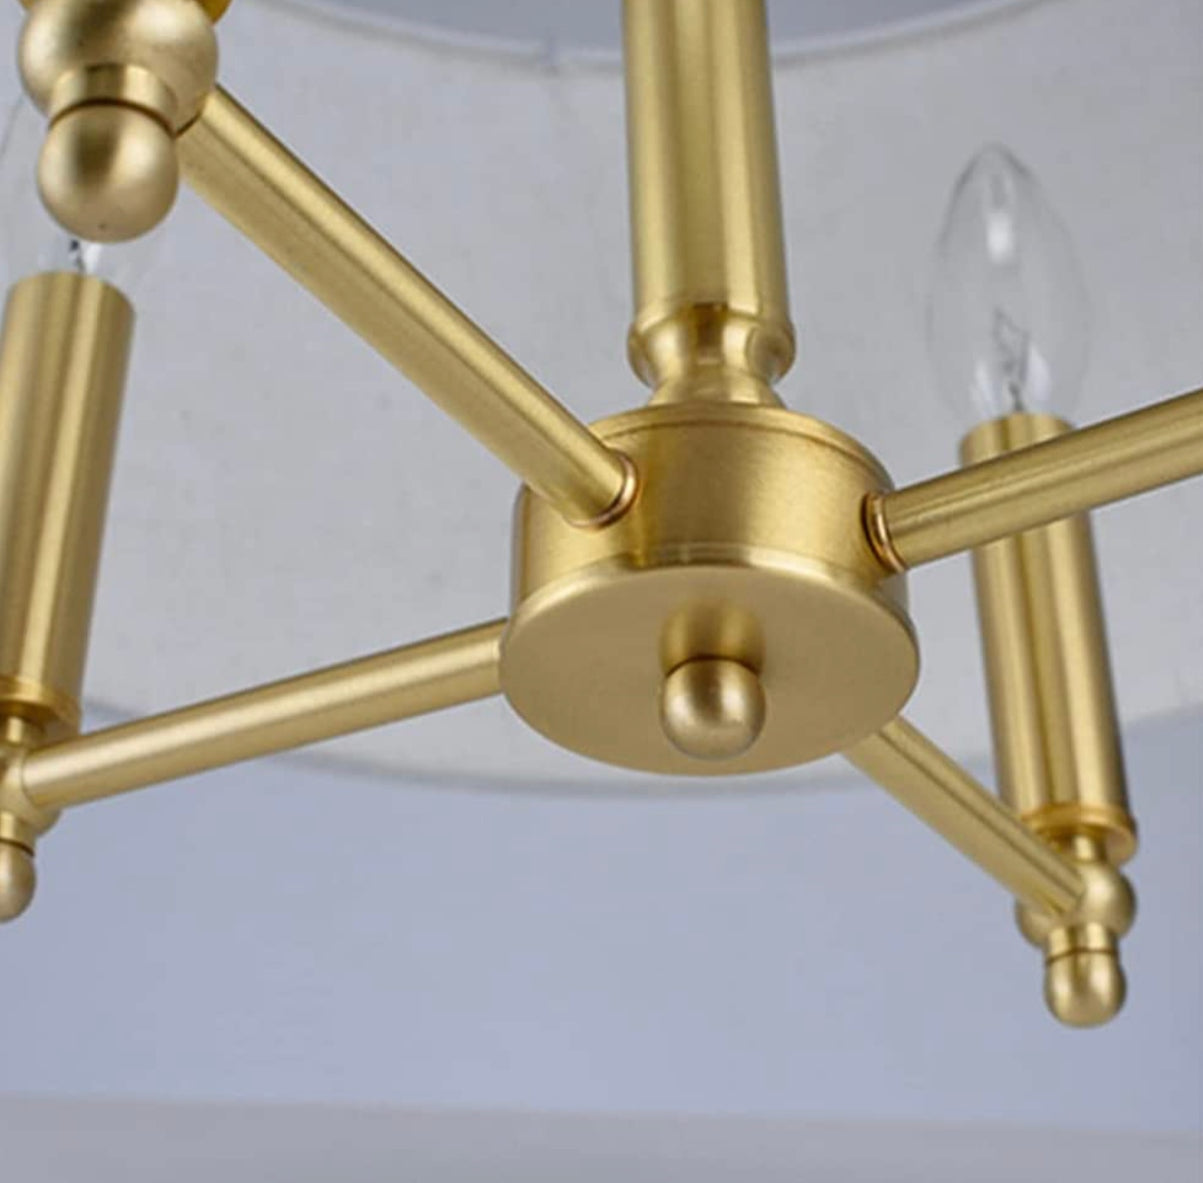 4-lights Modern Victorian Fabric Copper Chandelier For Hallway Corridor Living Room Bedroom - Chandeliers